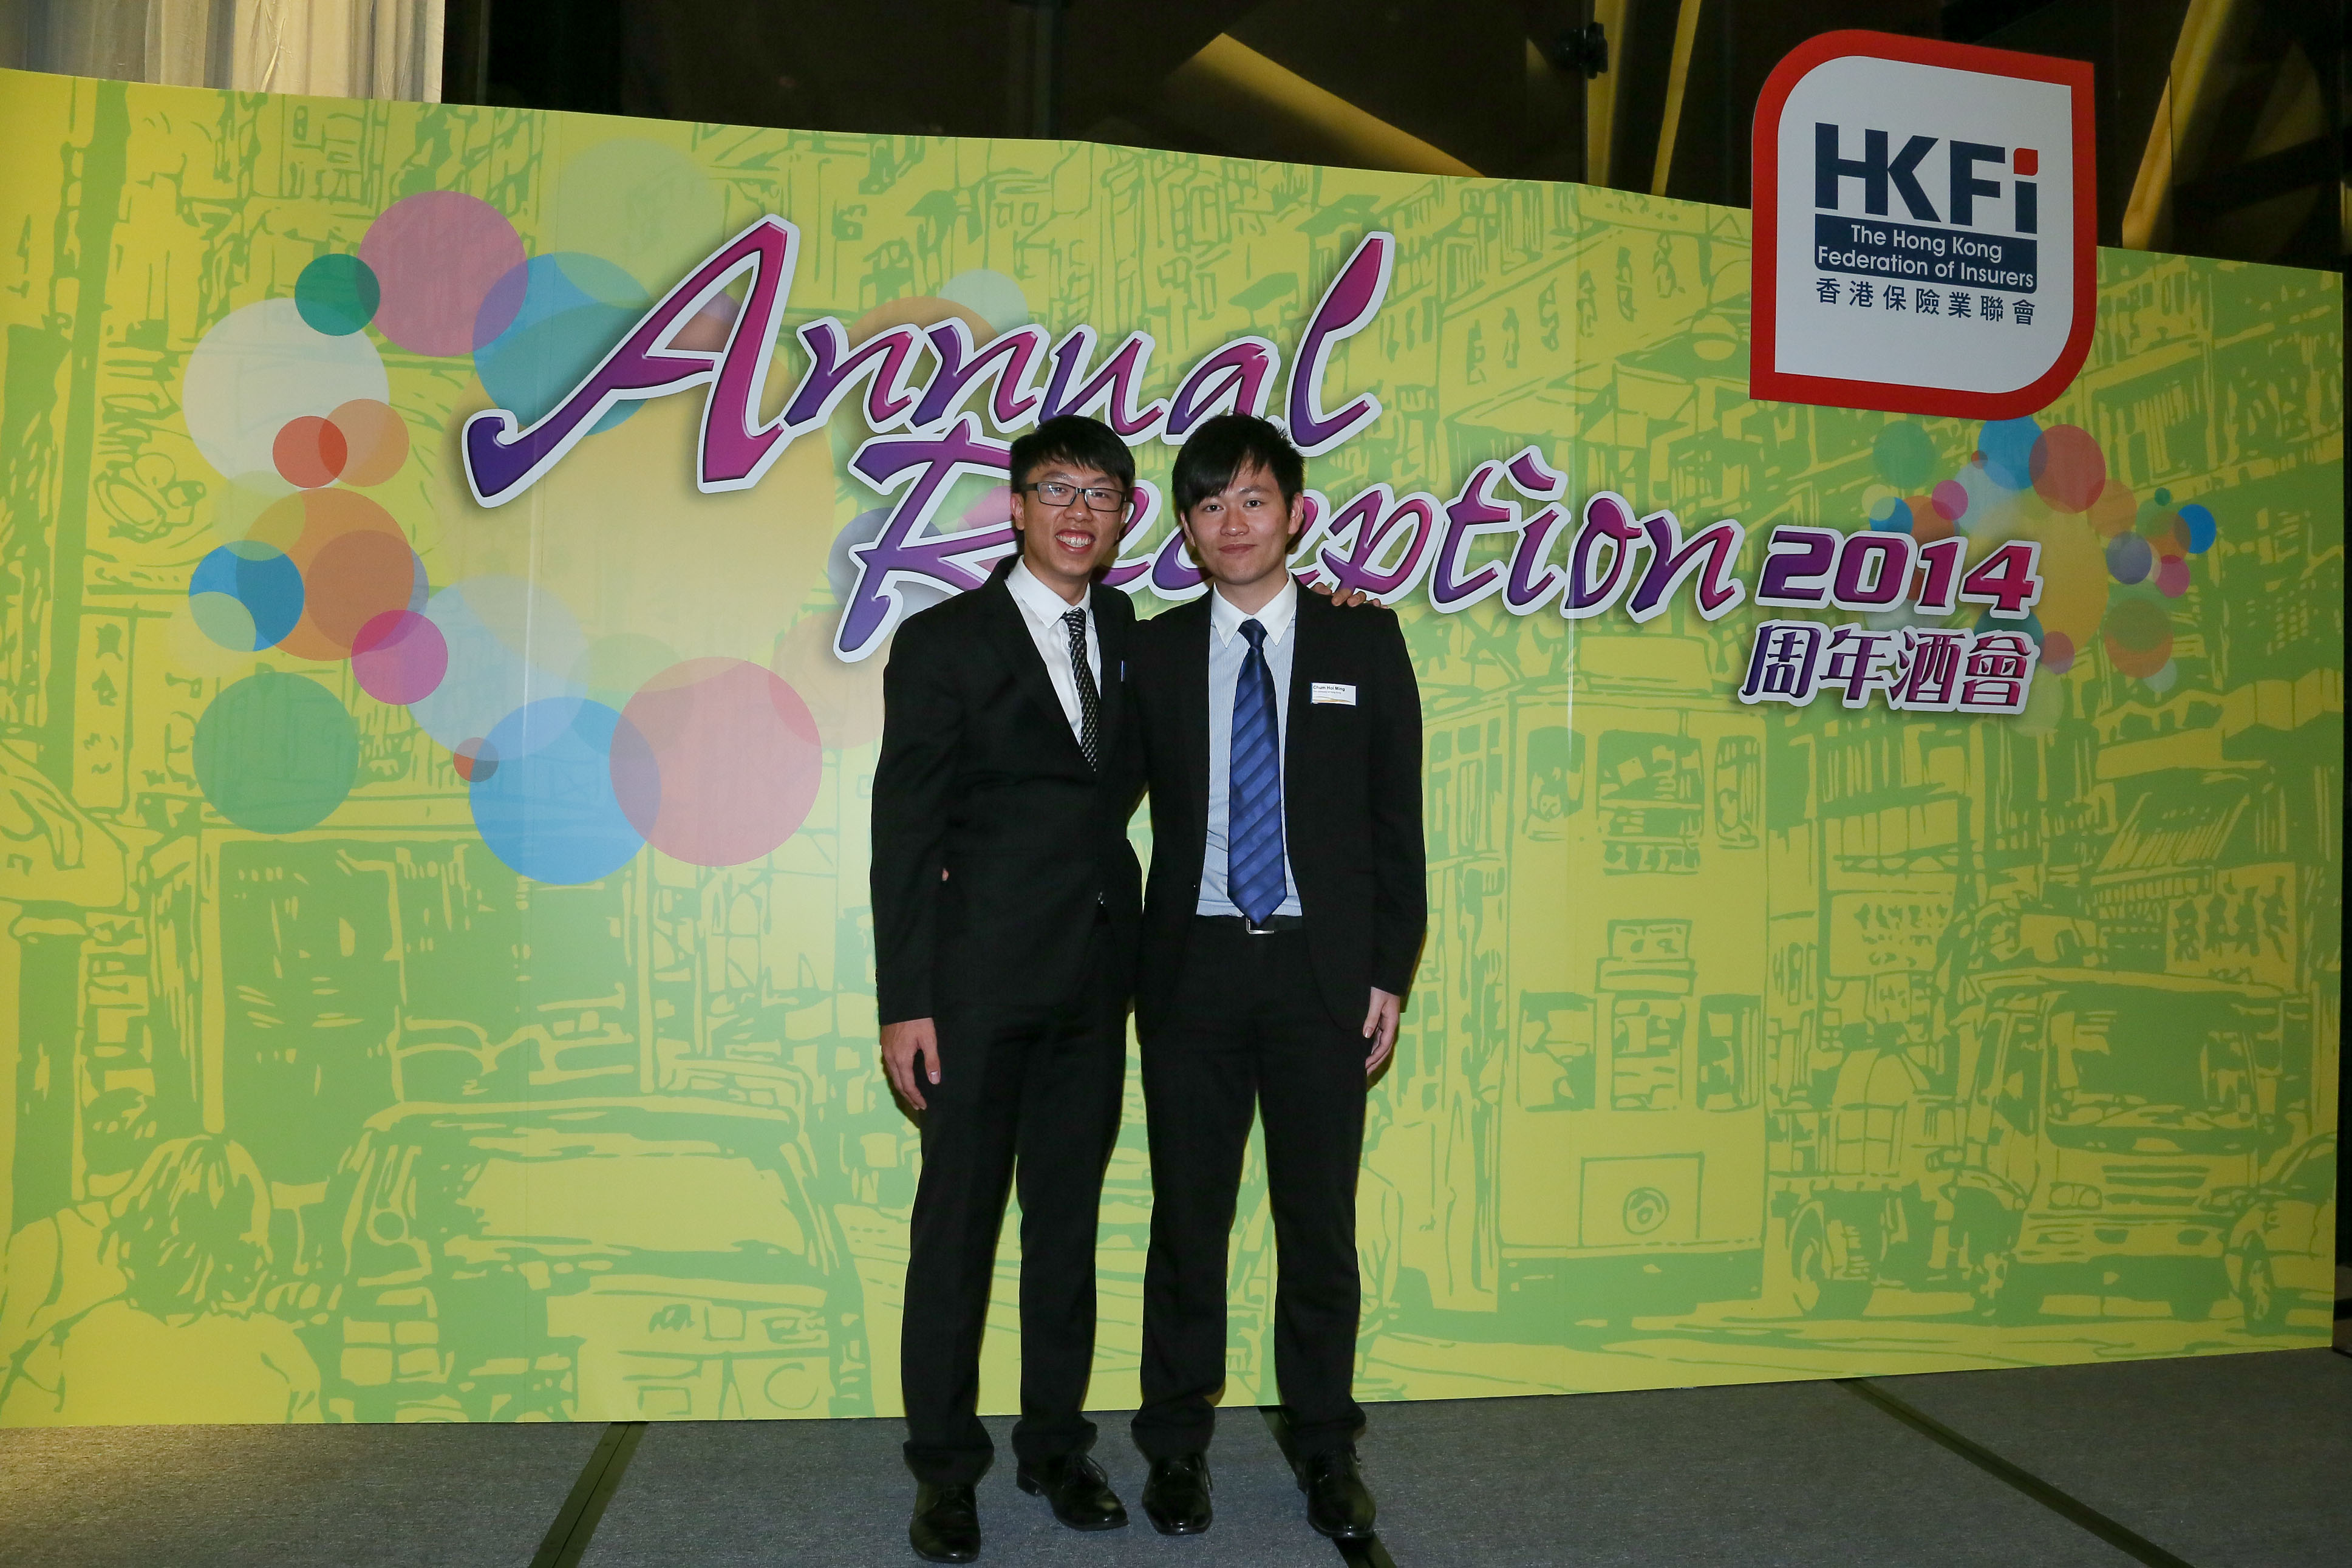 Annual Reception 2014 (2)